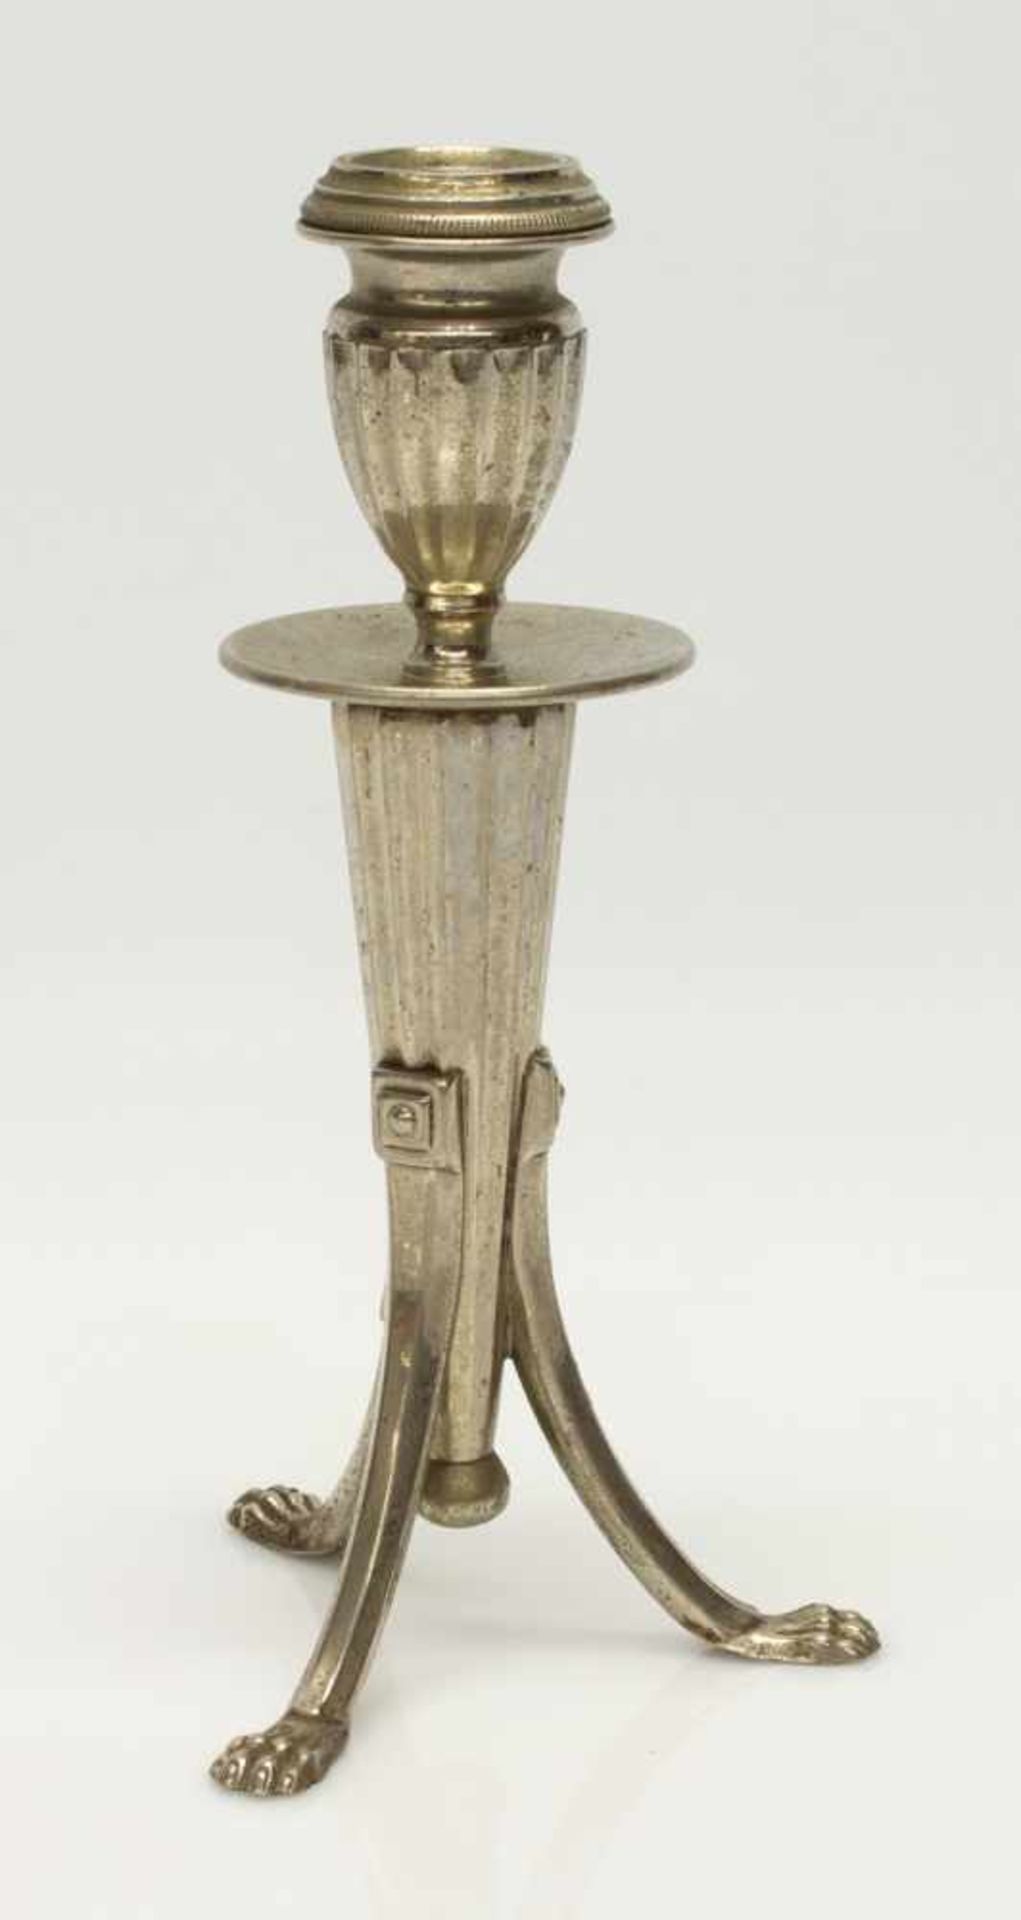 Tischleuchterum 1920, im Empirestil, Metall verchromt, H. 21 cm